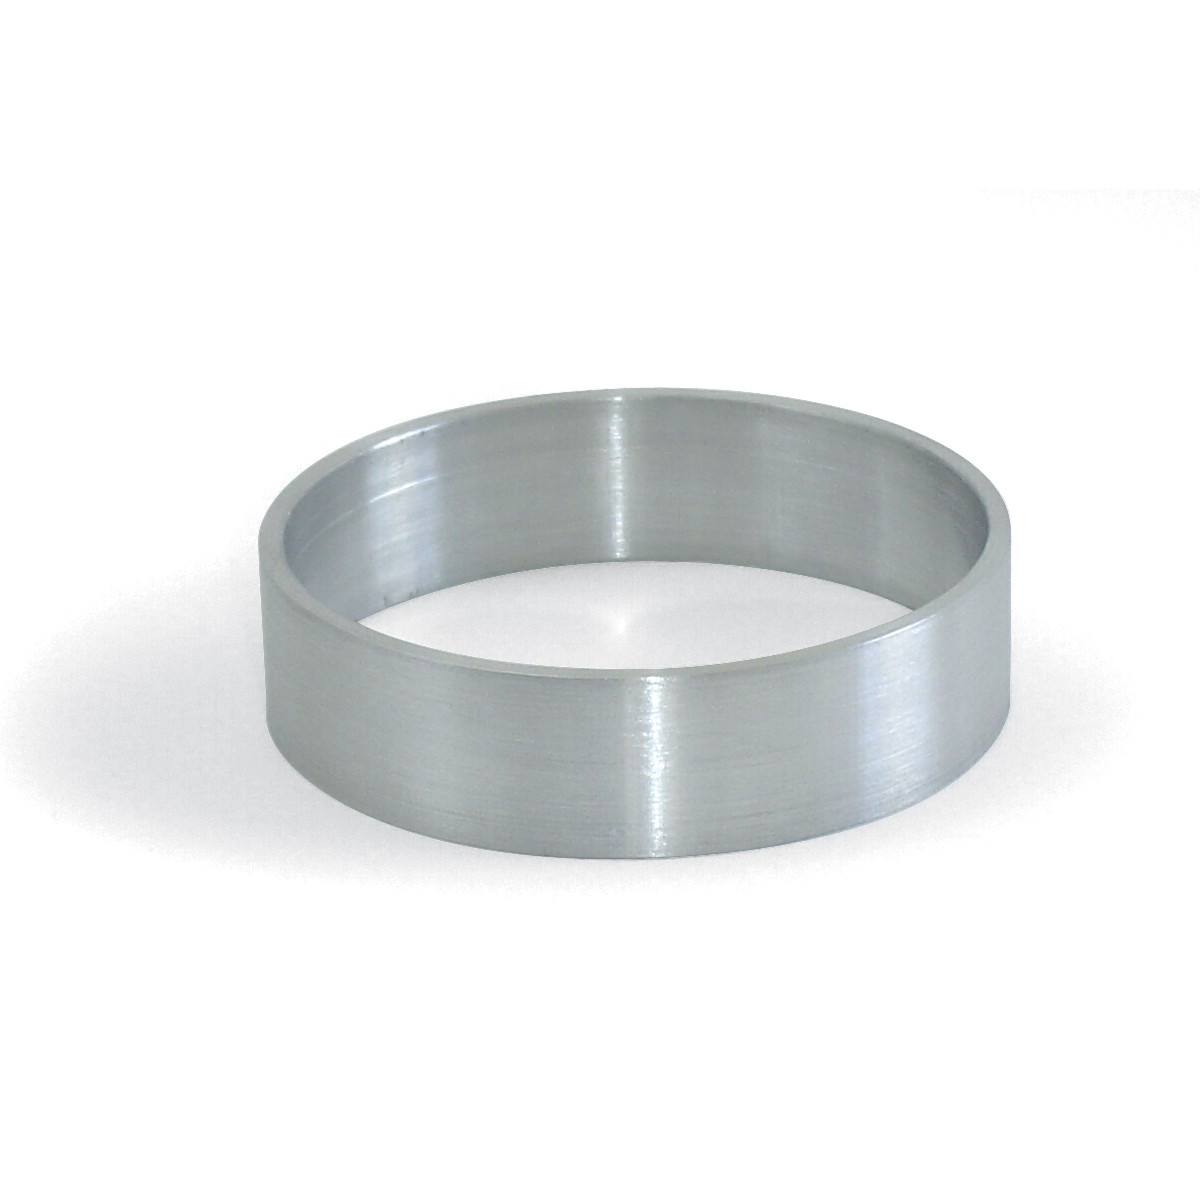 Fábrica de China Kit de medición del medidor de anillos, incluida la bobina  de resorte de plástico, paño de pulido de plata, ajustador de tamaño de anillo  invisible, medidor de anillo británico